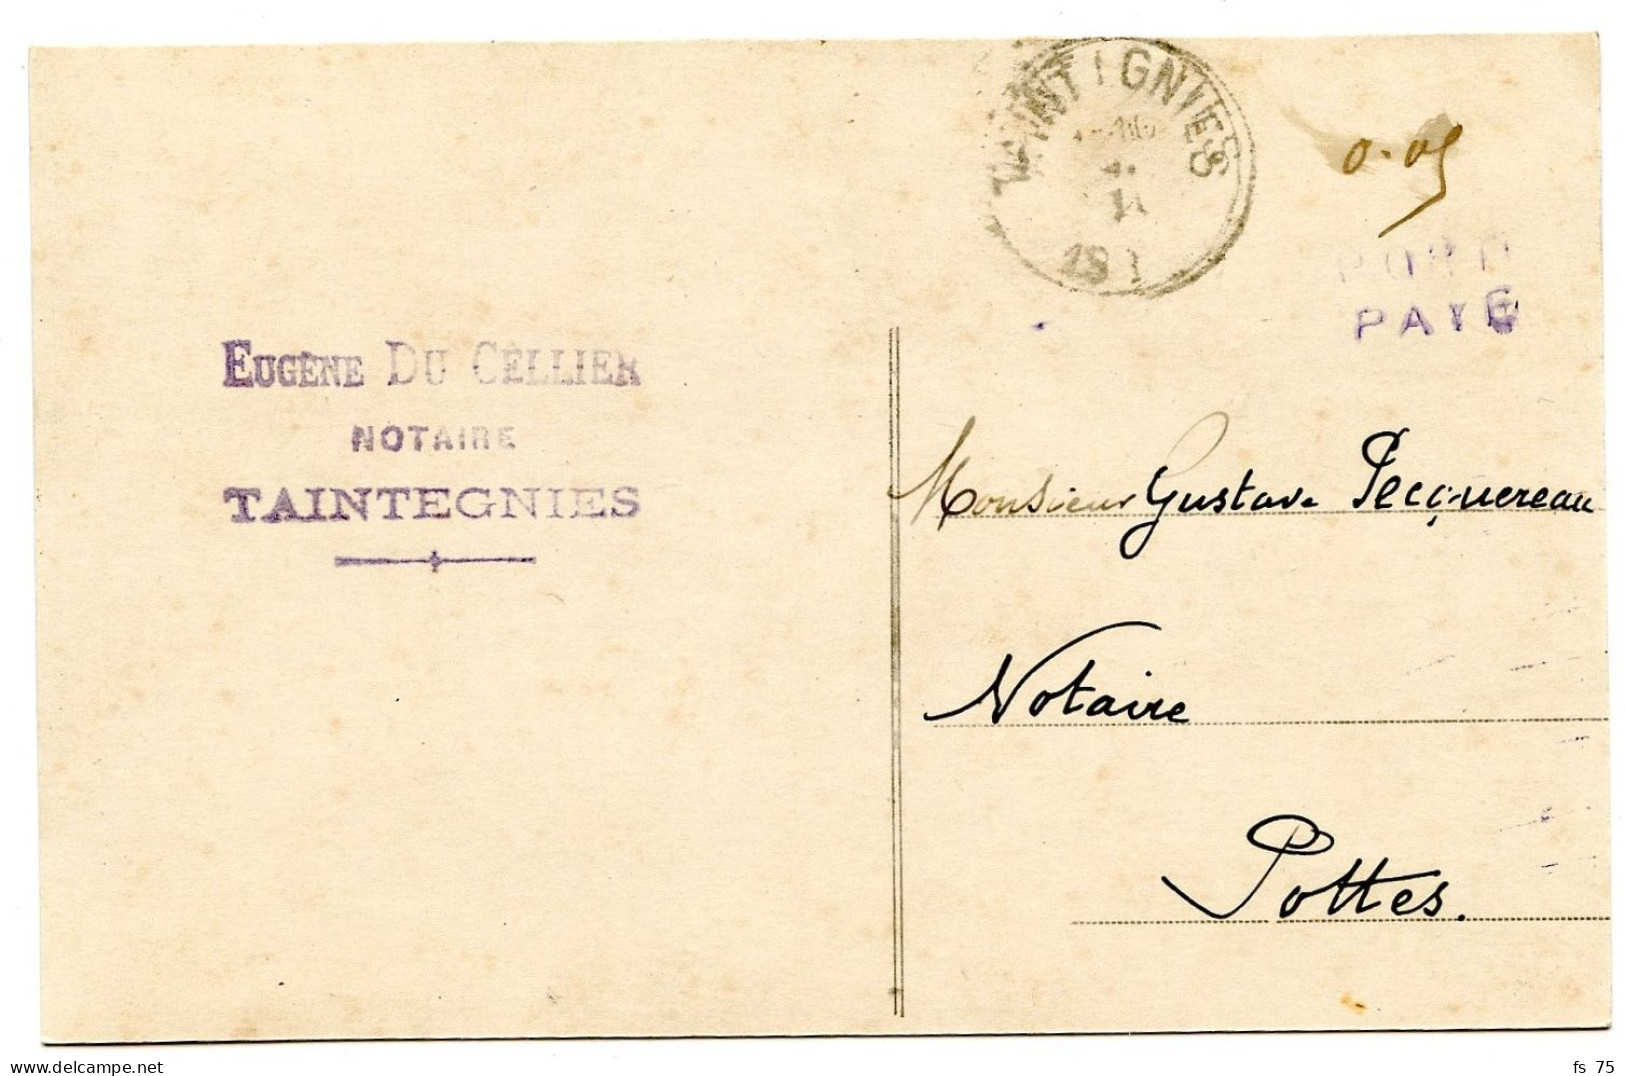 BELGIQUE - SIMPLE CERCLE TAINTEGNIES + 0,05 + GRIFFE PORT PAYE SUR CARTE POSTALE, 1919 - Storia Postale